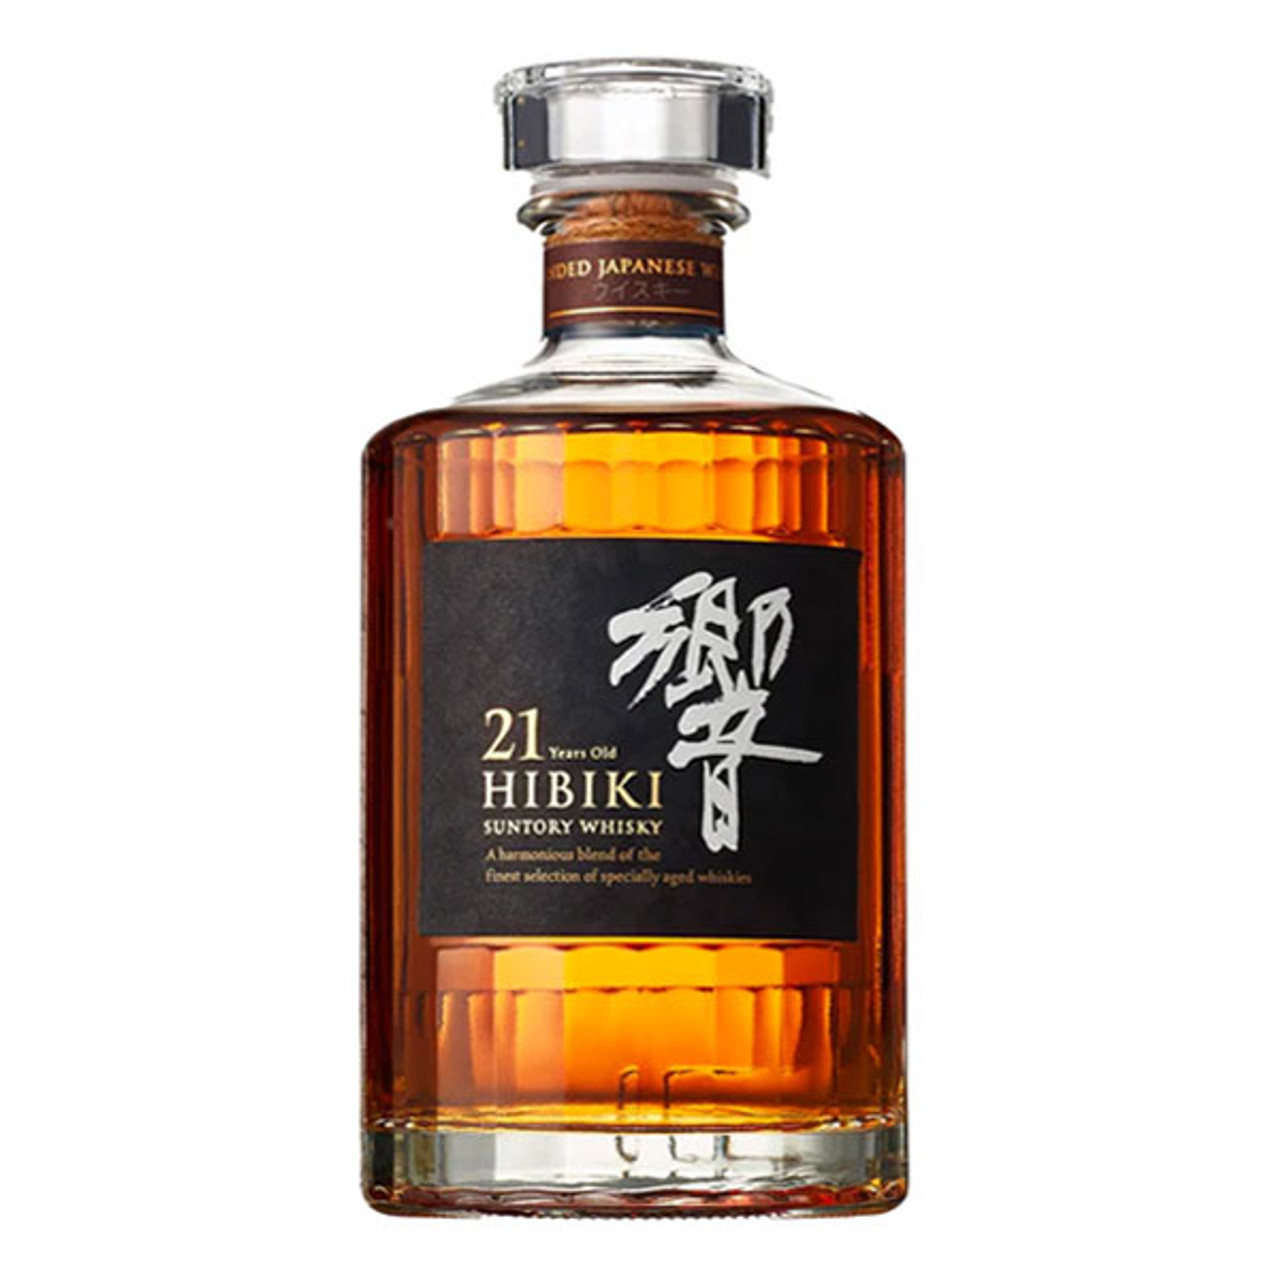 Suntory Hibiki 21 year Japanese Blended Whisky 700mL